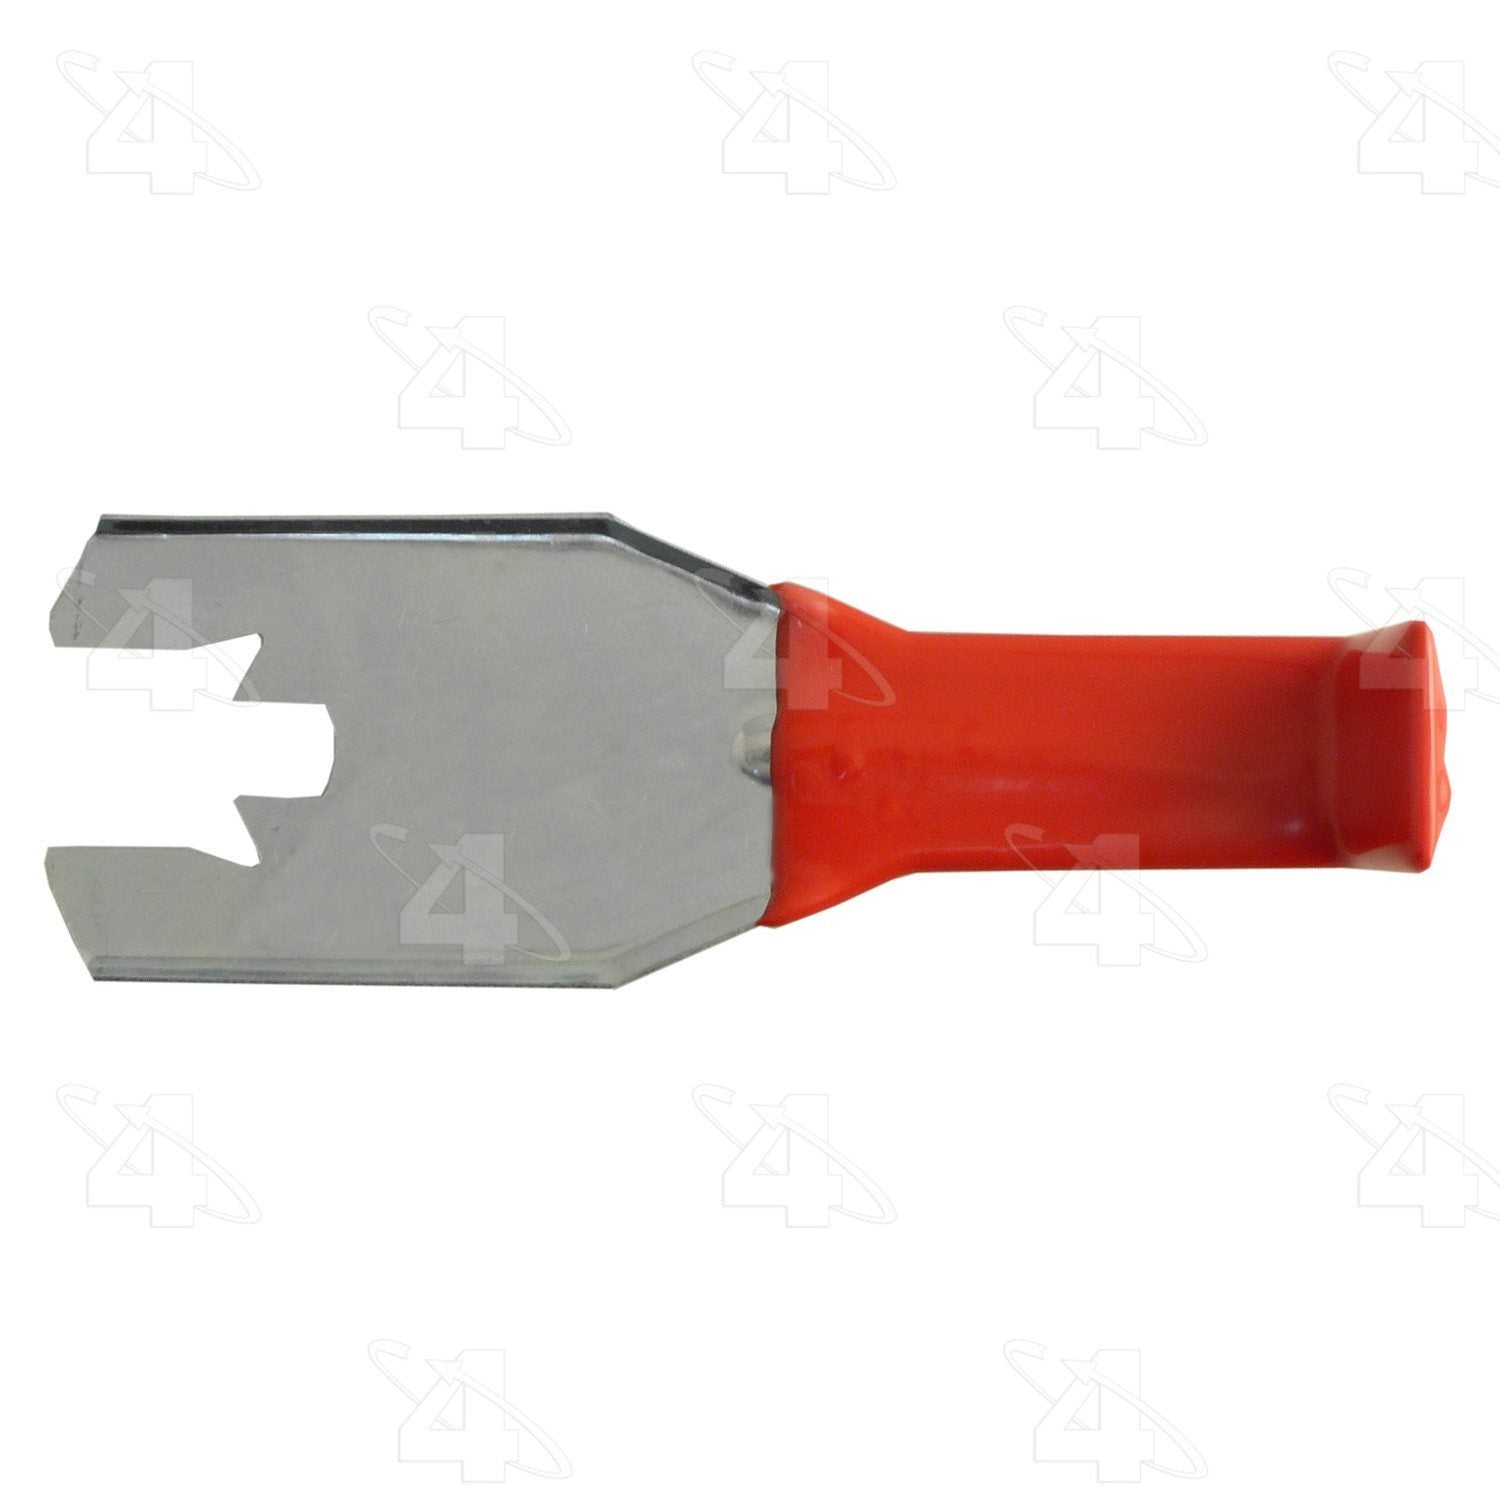 aci door handle c-clip removal tool  frsport 387902